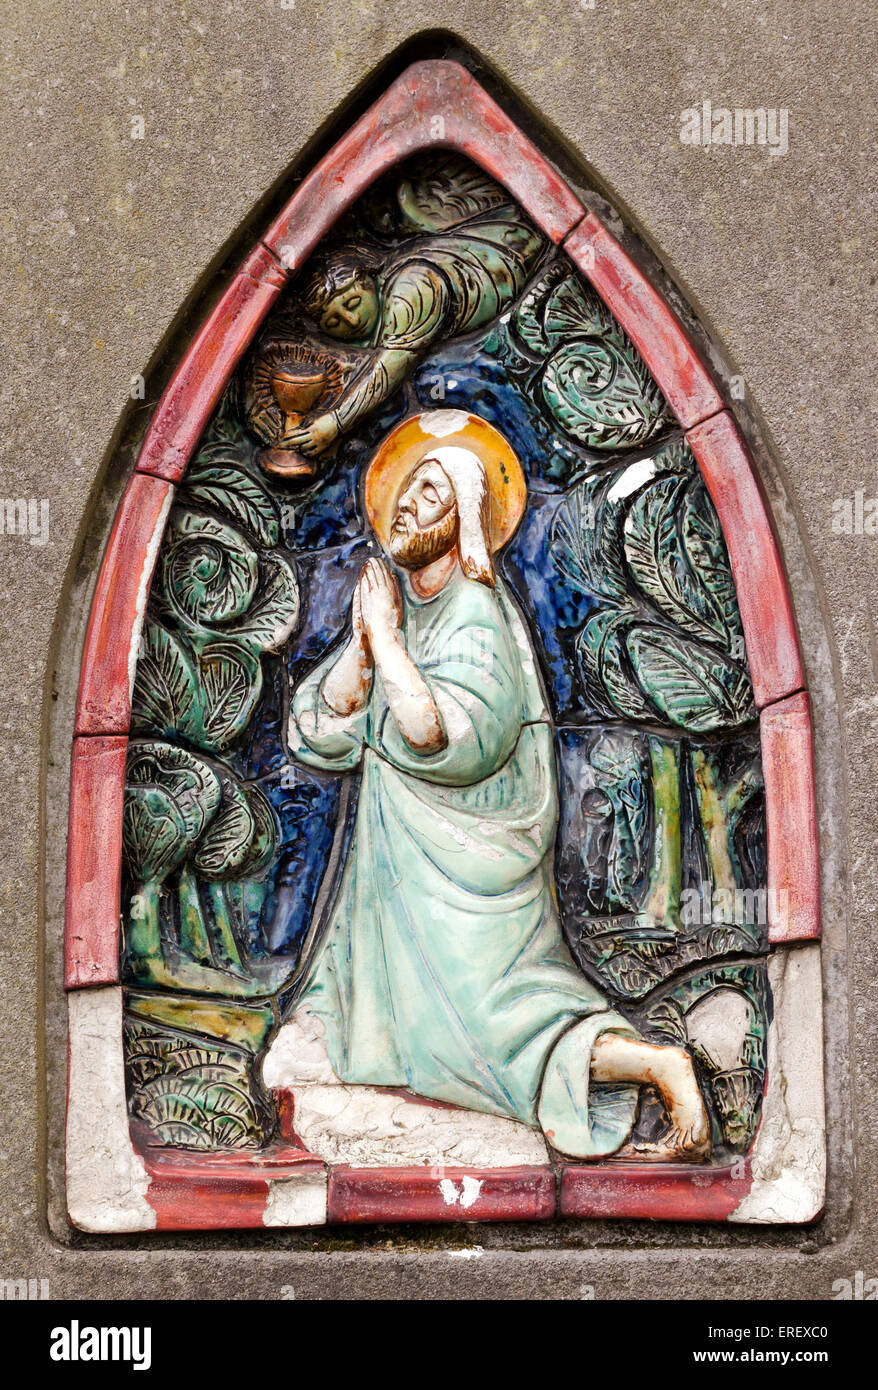 Nahaufnahme eines Christen, malte Gedenkstein auf einem Grabstein in Brompton Cemetery. Zeigt die kniende Gestalt Jesu. Stockfoto